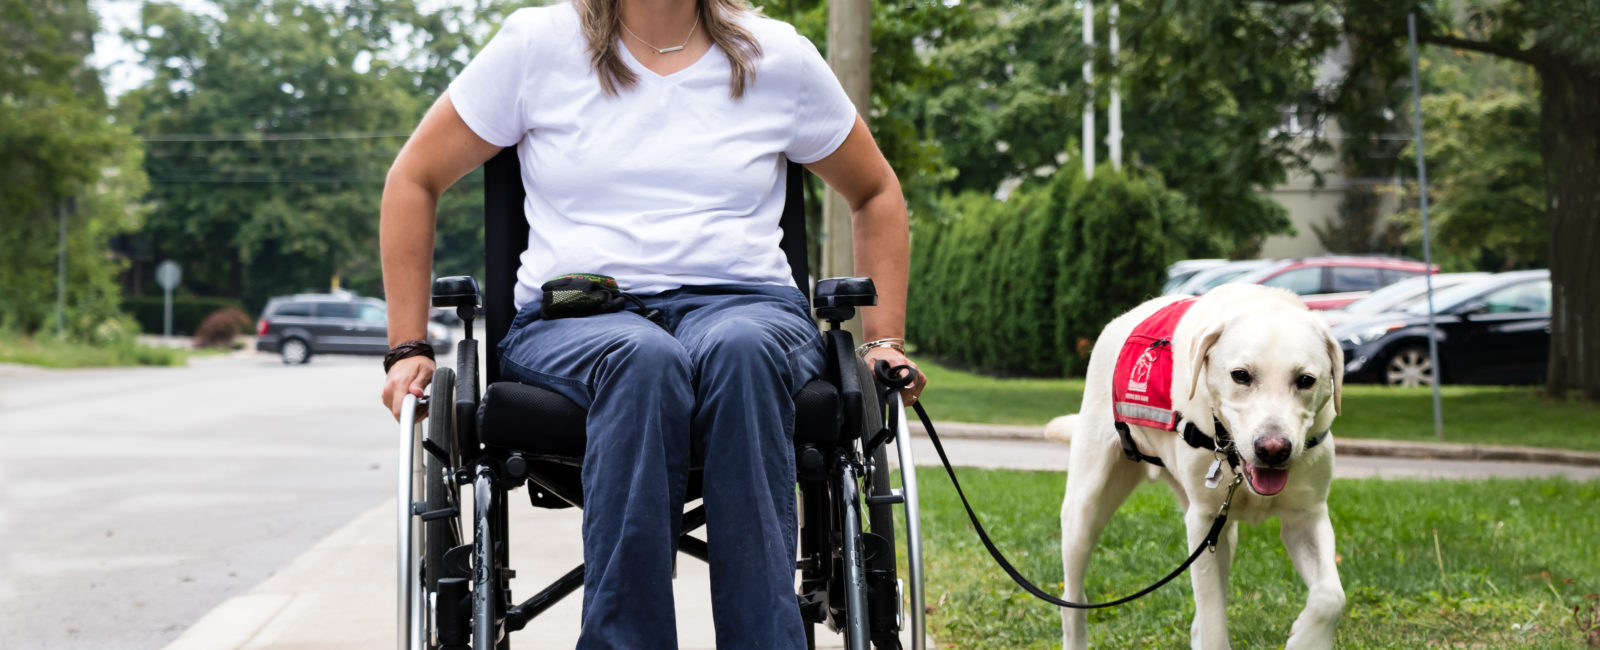 Femme en fauteuil roulant se promenant avec son chien guide à ses côtés